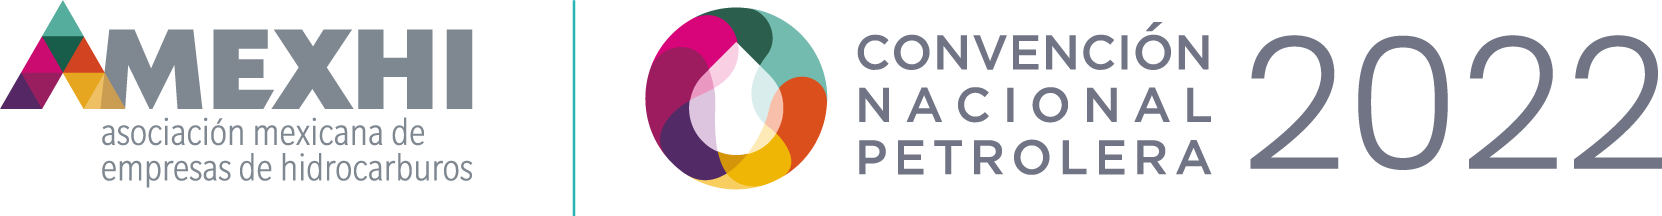 Convencion Nacional Petrolera 2022